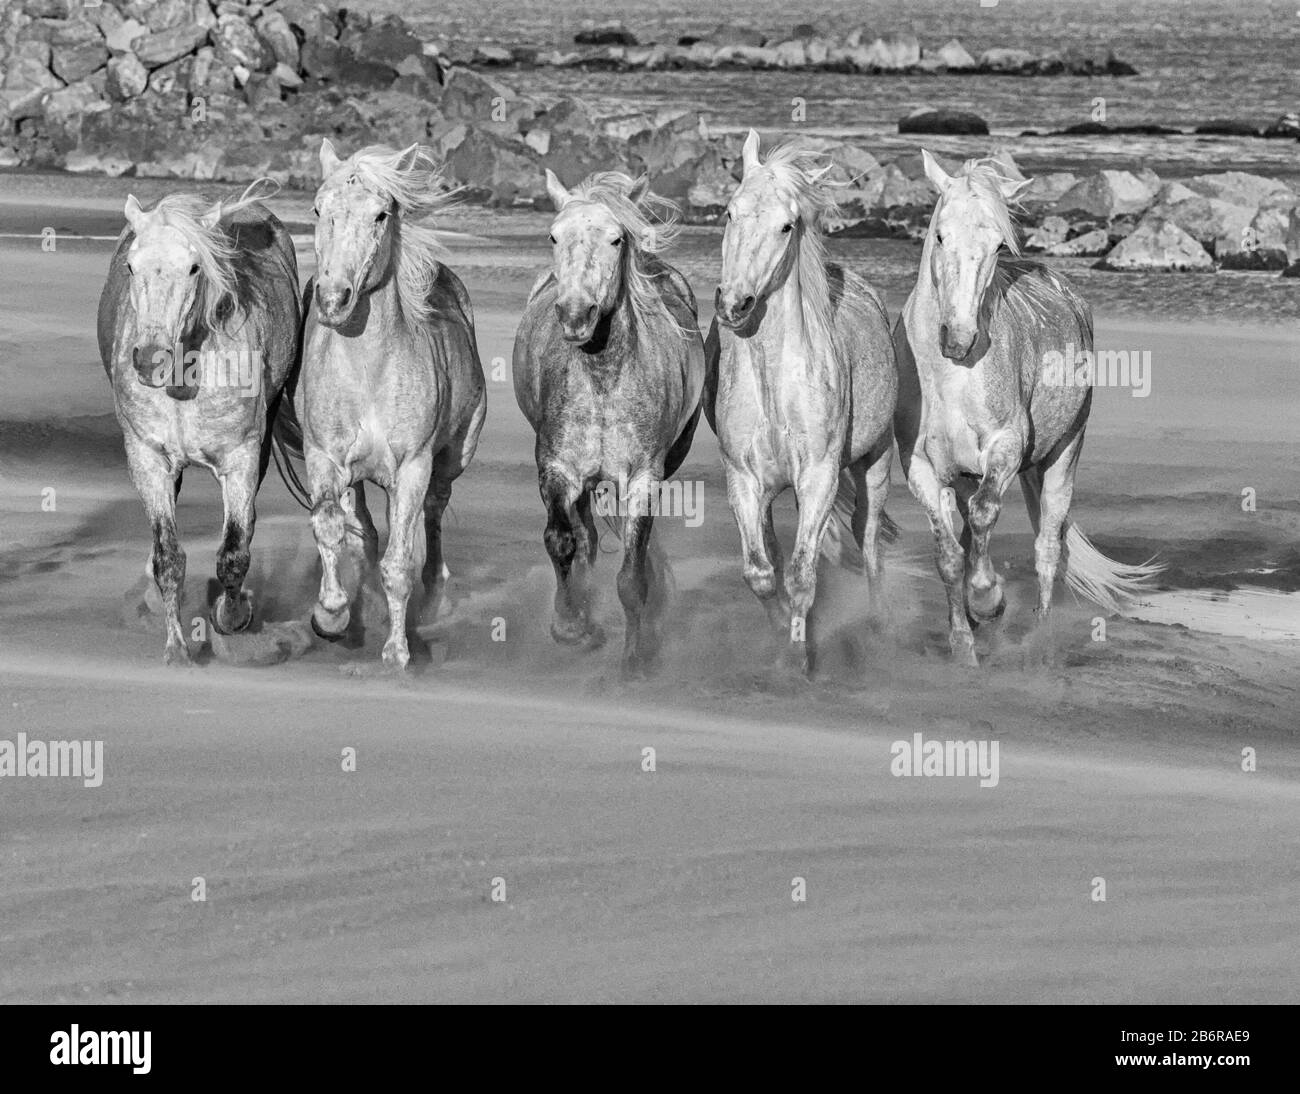 Chevaux Camargue (Equus cavallus), galopant le long du sable près de Saintes-Marie-de-la-Mer, Camargue, France, Europe Banque D'Images